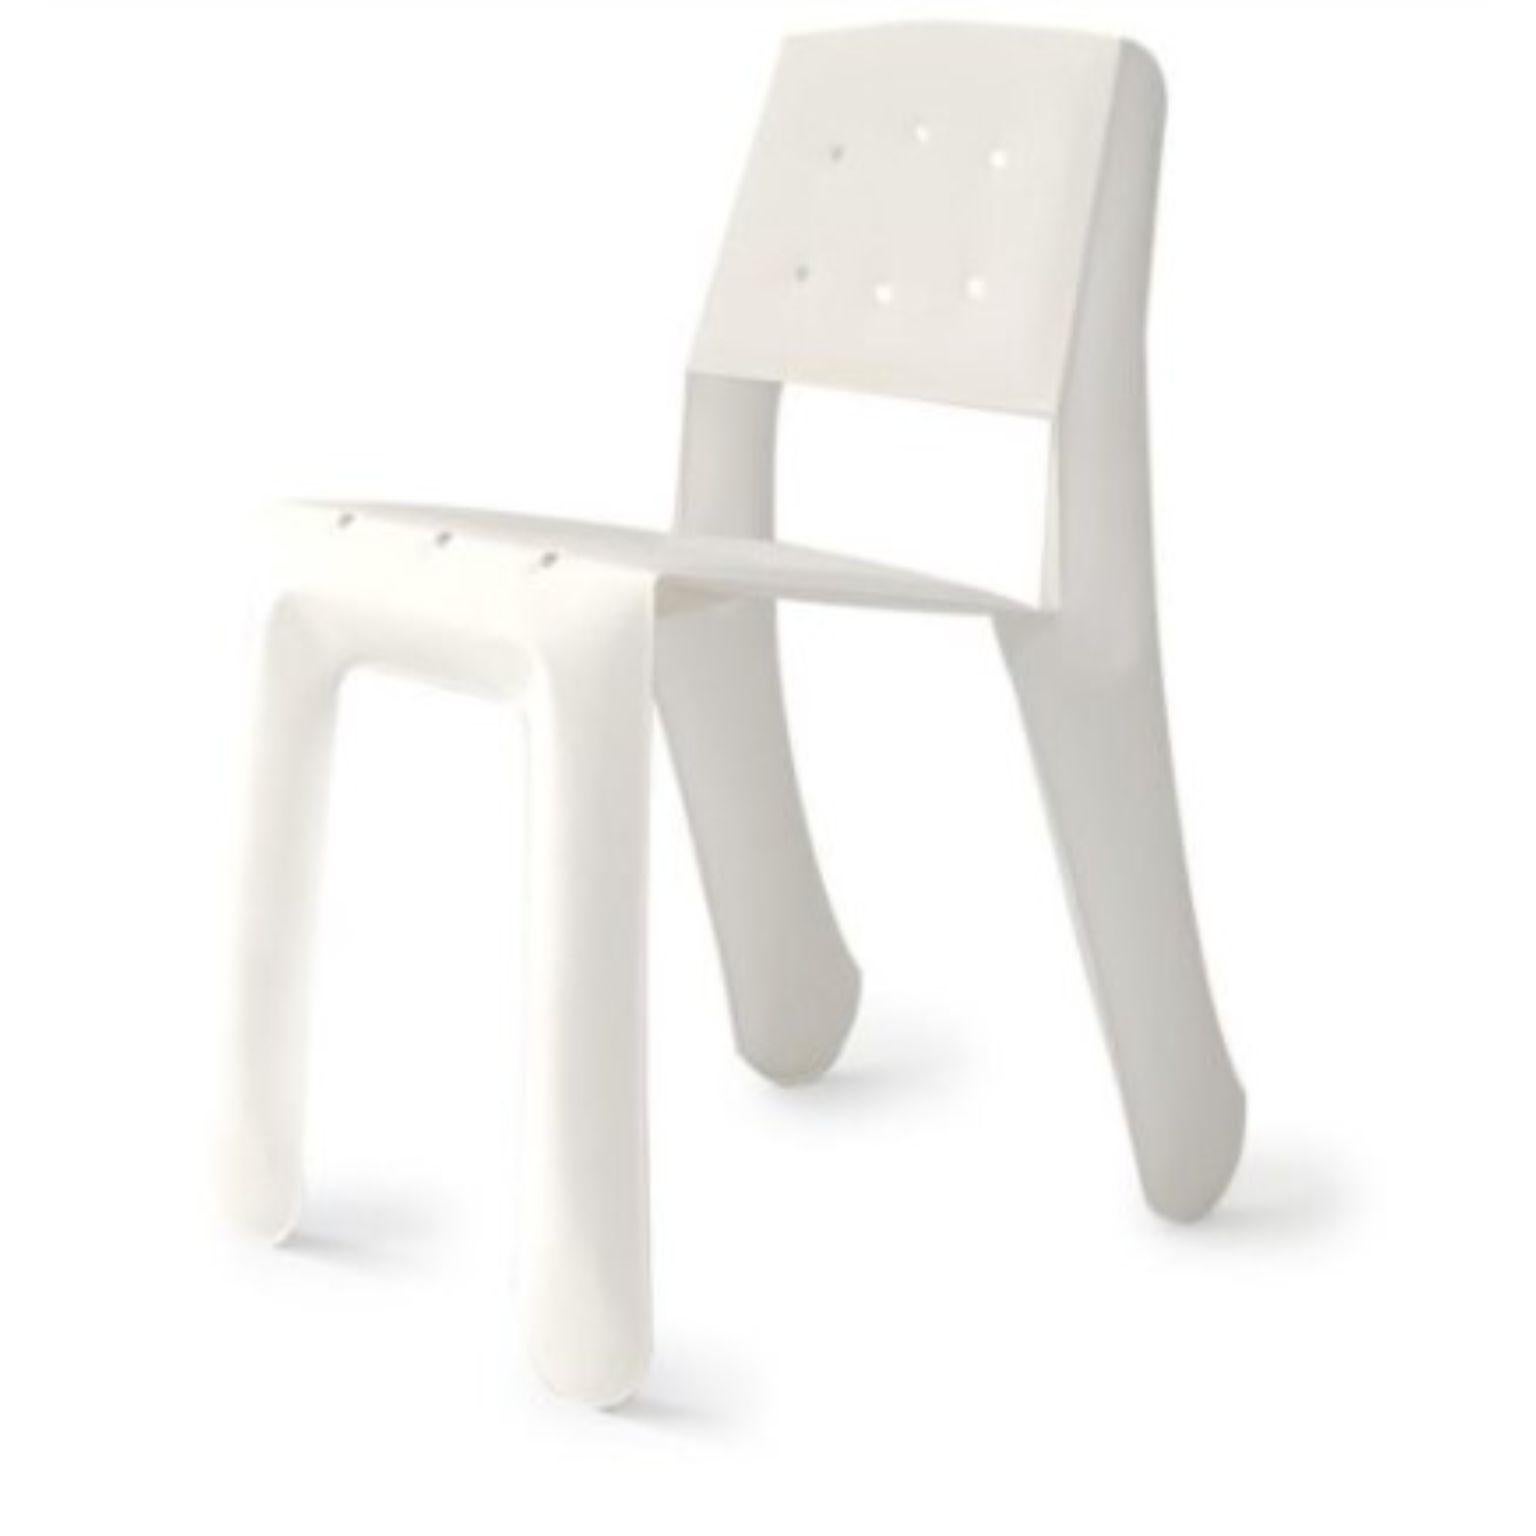 Chaise sculpturale Chippensteel 0.5 en aluminium blanc mat de Zieta
Dimensions : P 58 x L 46 x H 80 cm 
Matériau : Aluminium. 
Finition : Revêtement en poudre. Finition mate. 
Disponible en couleurs : Blanc mat, beige, noir, bleu-gris, graphite,